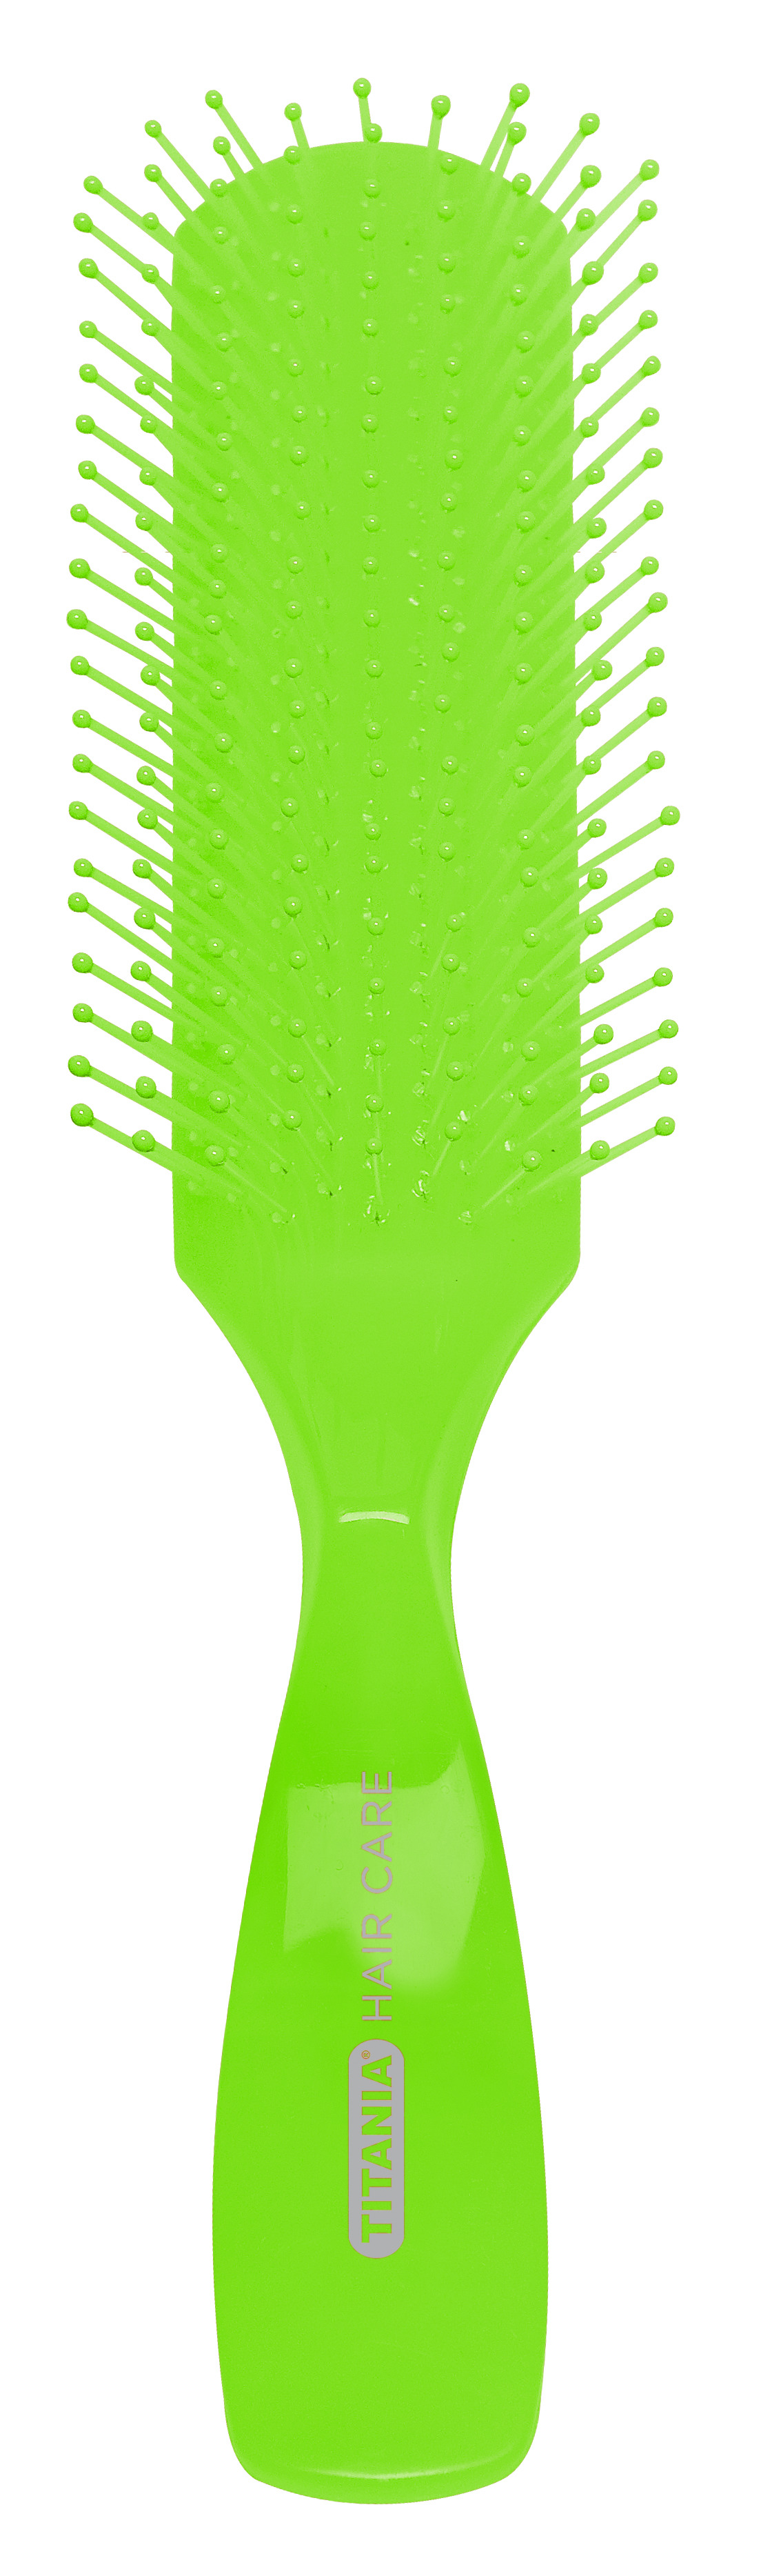 Щетка для волос Titania массажная, 9 рядов, зеленый (1830 зел) - фото 1